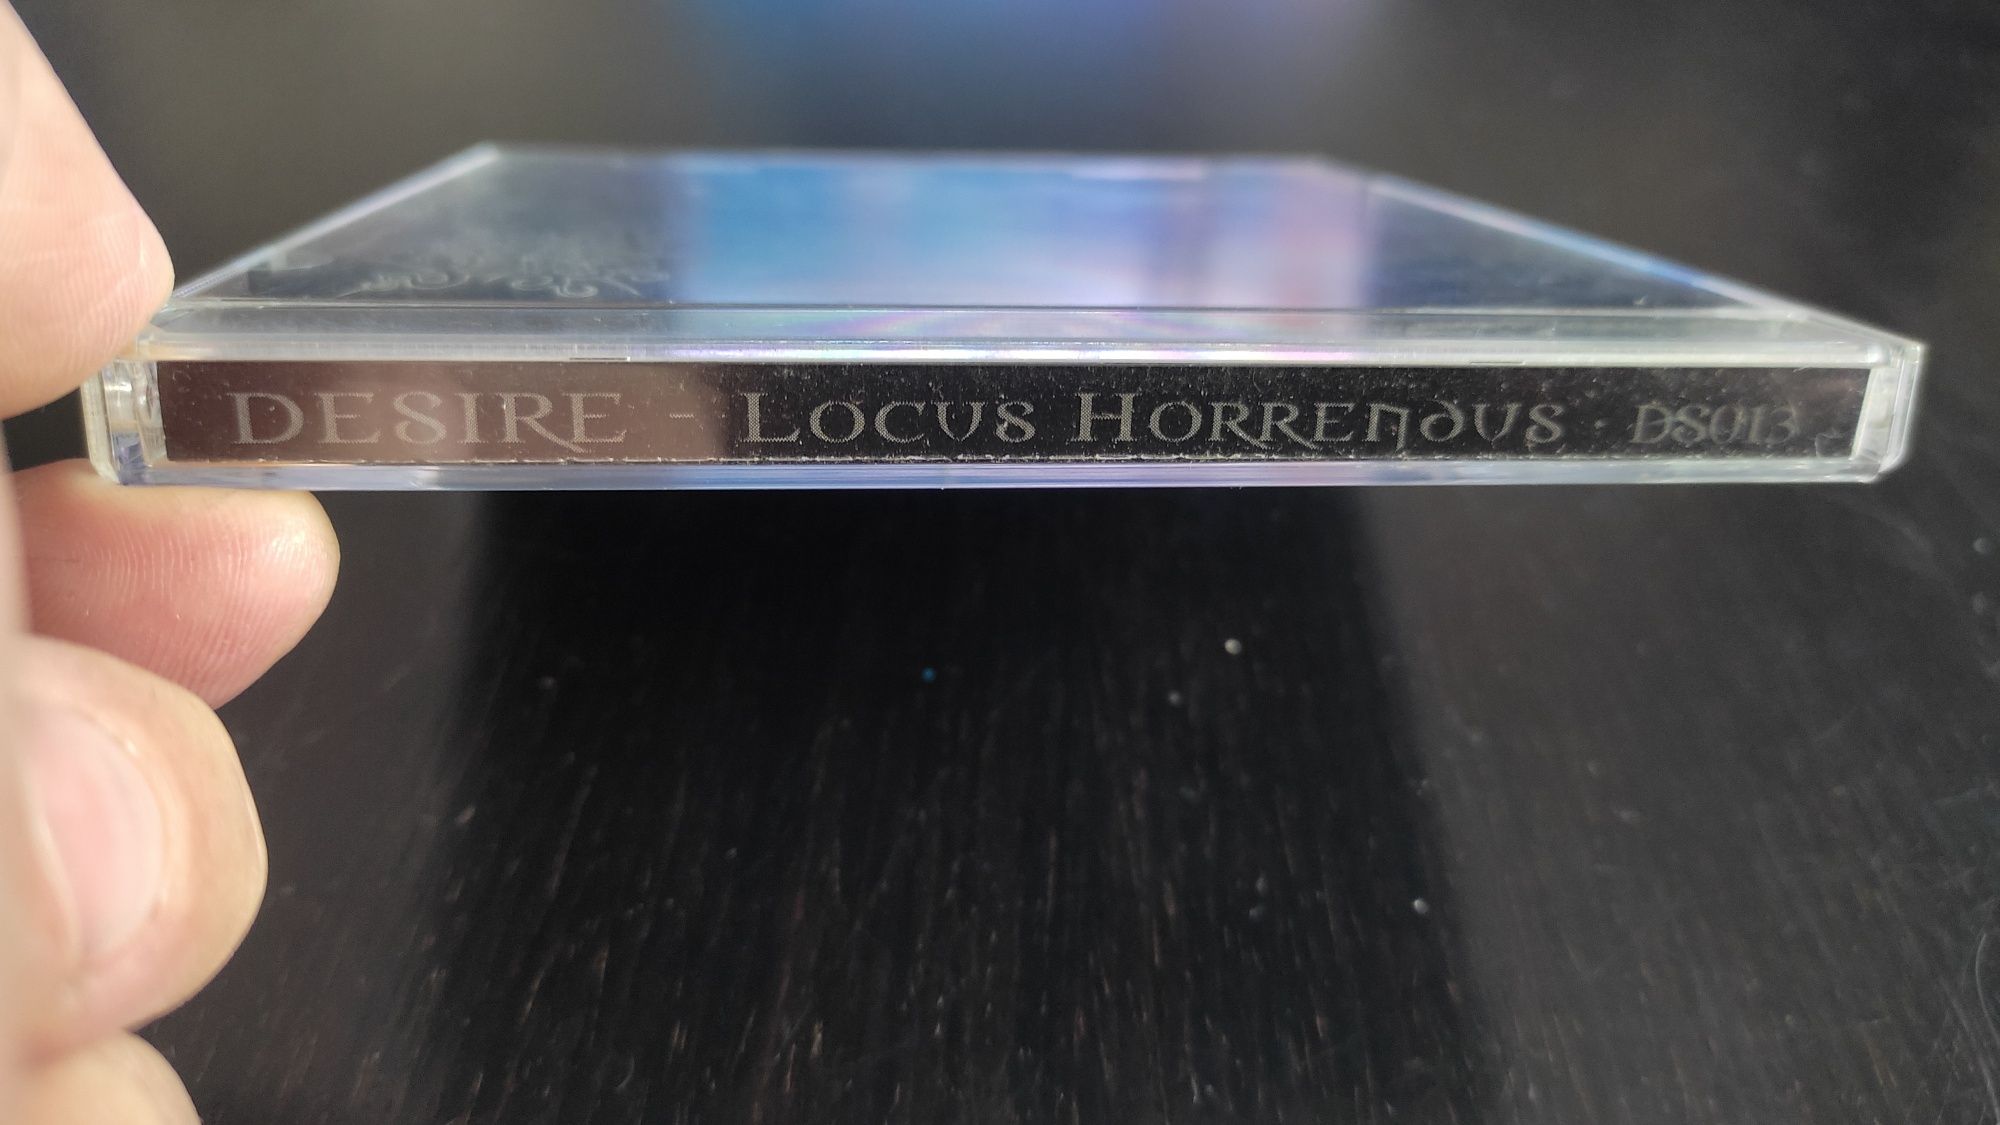 CD Desire " Locus Horrendus "